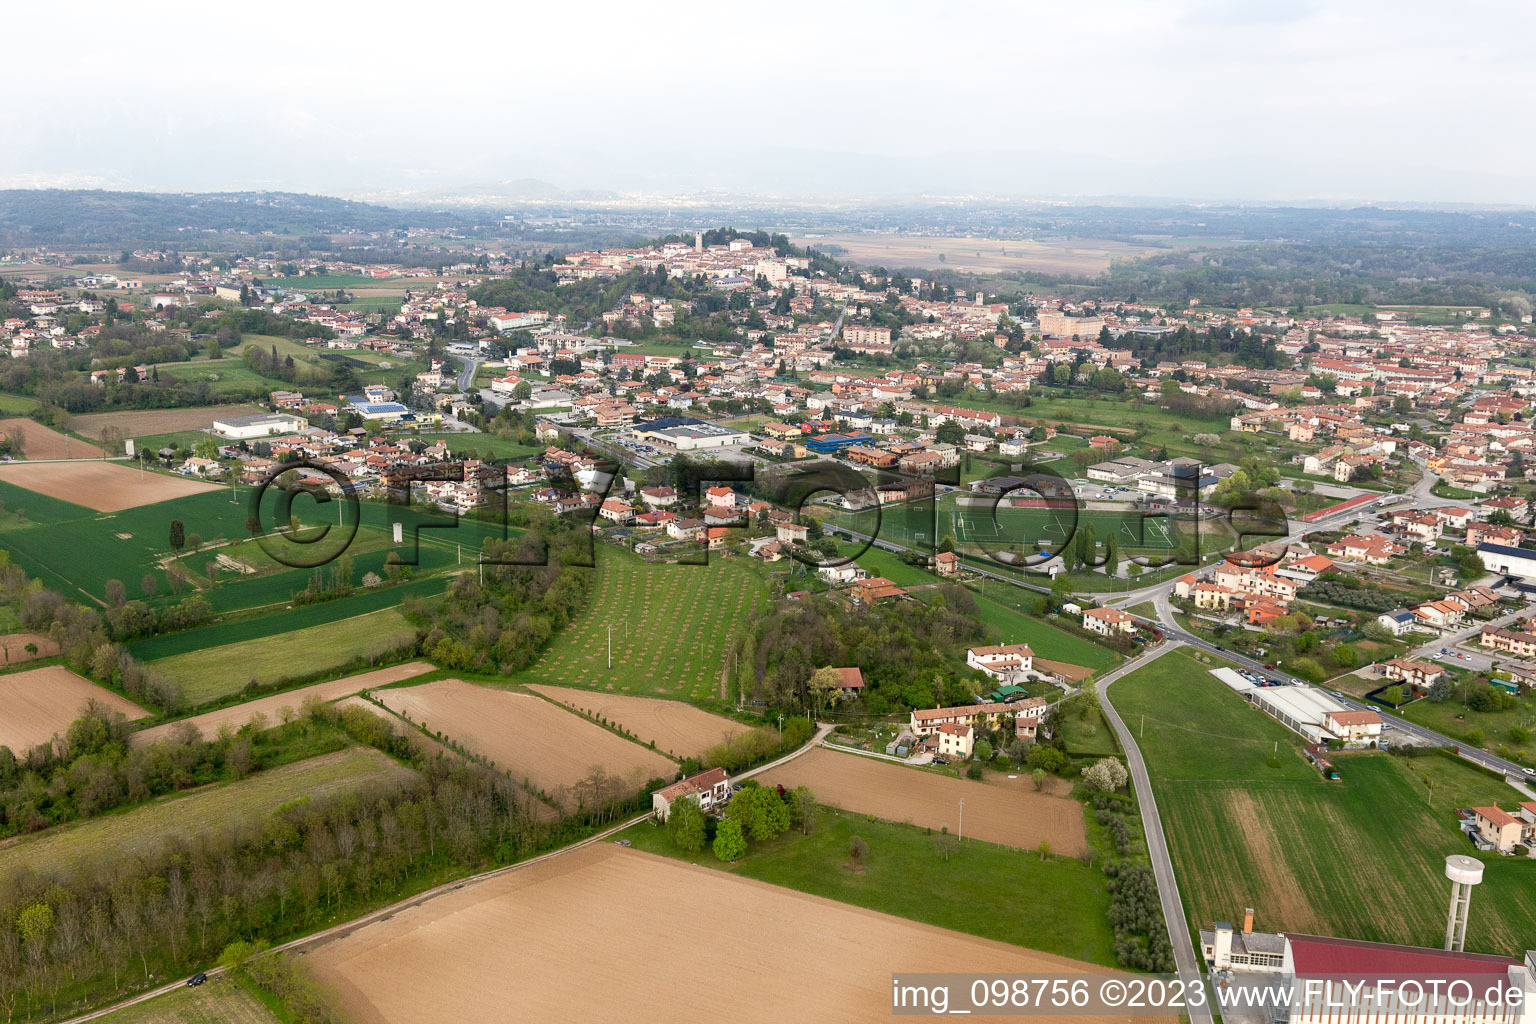 Luftbild von San Daniele del Friuli im Bundesland Friaul-Julisch Venetien, Italien